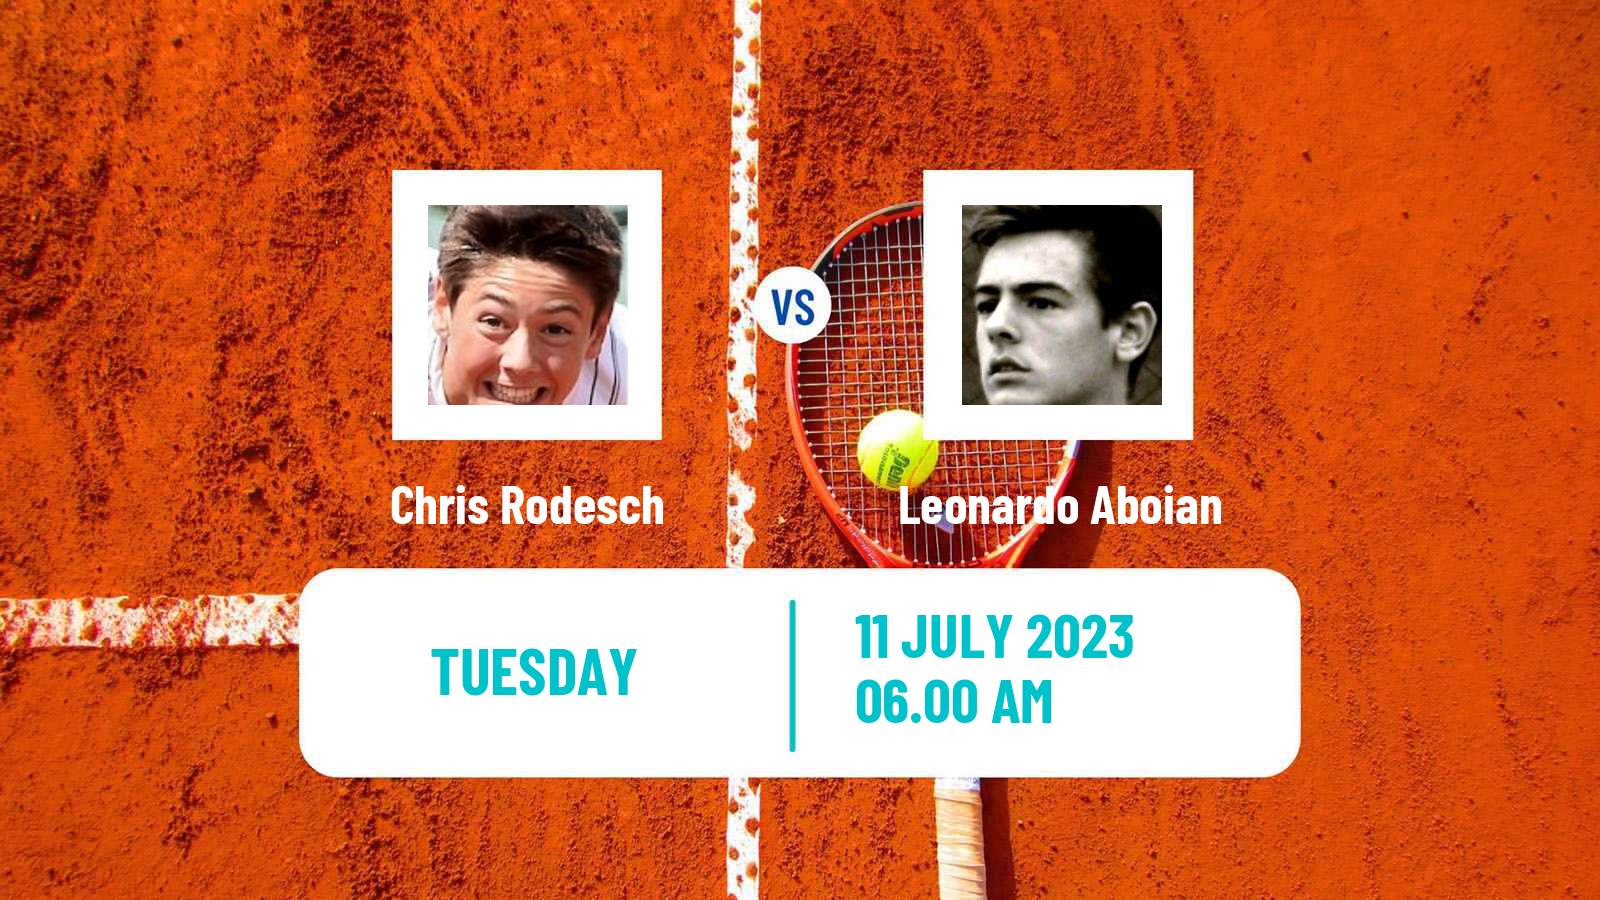 Tennis ITF M25 Esch Alzette Men 2023 Chris Rodesch - Leonardo Aboian